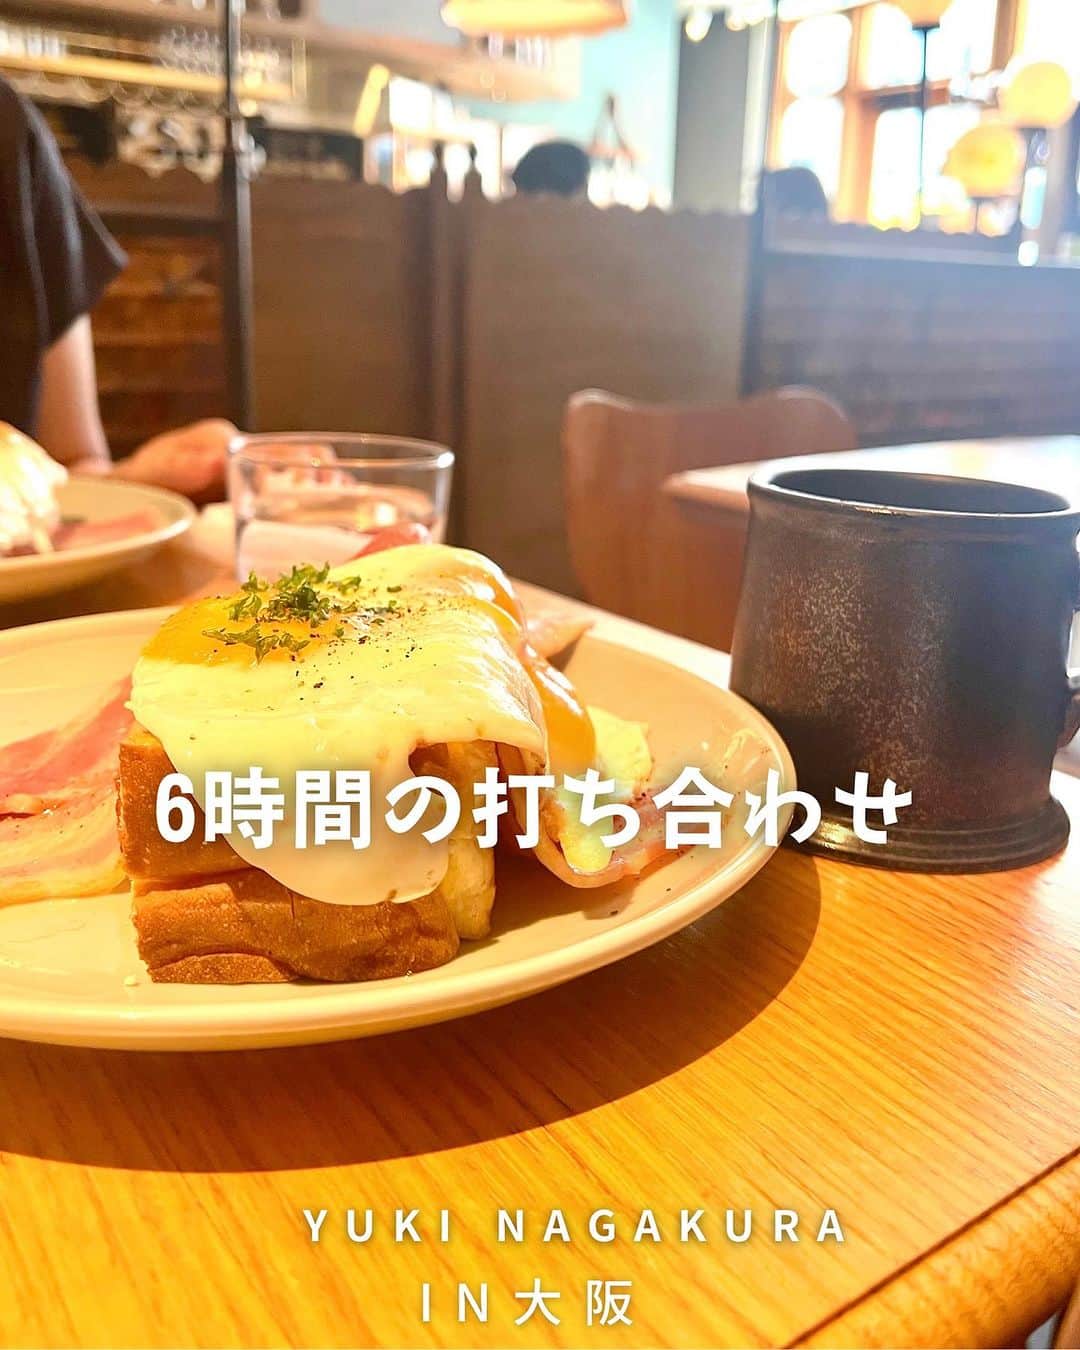 永倉由季のインスタグラム：「【「喫茶 檸檬の」新大阪店】 　　 昨日は朝から6時間 まいまいとミーティング✍️✨ 　 　　　　　　　　　 焼きカレーと檸檬(レモン)ケーキが 大人気のカフェ「喫茶 檸檬の」さんへ 行ってきました。 (「檸檬の」までが店名です) 　　　　　　 　　 @cafelemon_no   入った時は3組だったのに 気づけば満席！  　　　　　　 各席にコンセントも付いていて 仕事もできる静かな空間♡ 　　　　　　　　　　　　 めちゃくちゃイイ！ 　 　　　　 泣いて笑って 盛り盛りの一日だった(笑)  　　　　　 そして今日は別チームで 作業しながら 笑いすぎた一日だった(笑)  #大阪カフェ  #新大阪駅グルメ  #西中島南方グルメ  #喫茶檸檬の  #カフェ好きな人と繋がりたい   ▶︎アメブロ更新　↓プロフリンクから　　　　　　　　　　　　　　　@yuki_nagakura67  ✼••┈┈┈┈┈┈┈┈┈┈┈┈┈┈┈┈••✼  　　　　　 ▶︎アナウンサー・プライベート用Instagram @yuki_nagakura67  ▶︎ブランディング用/魅せ方・伝え方・オススメ @yuki_nagakura_brushup_salon  ✼••┈┈┈┈┈┈┈┈┈┈┈┈┈┈┈┈••✼  #永倉由季 #フリーアナウンサー #司会者 #顔タイプ診断 #顔タイプアドバイザー #顔タイプ診断® #アナウンサー #気軽にフォローしてください #起業女子#話し方 ___________________________」